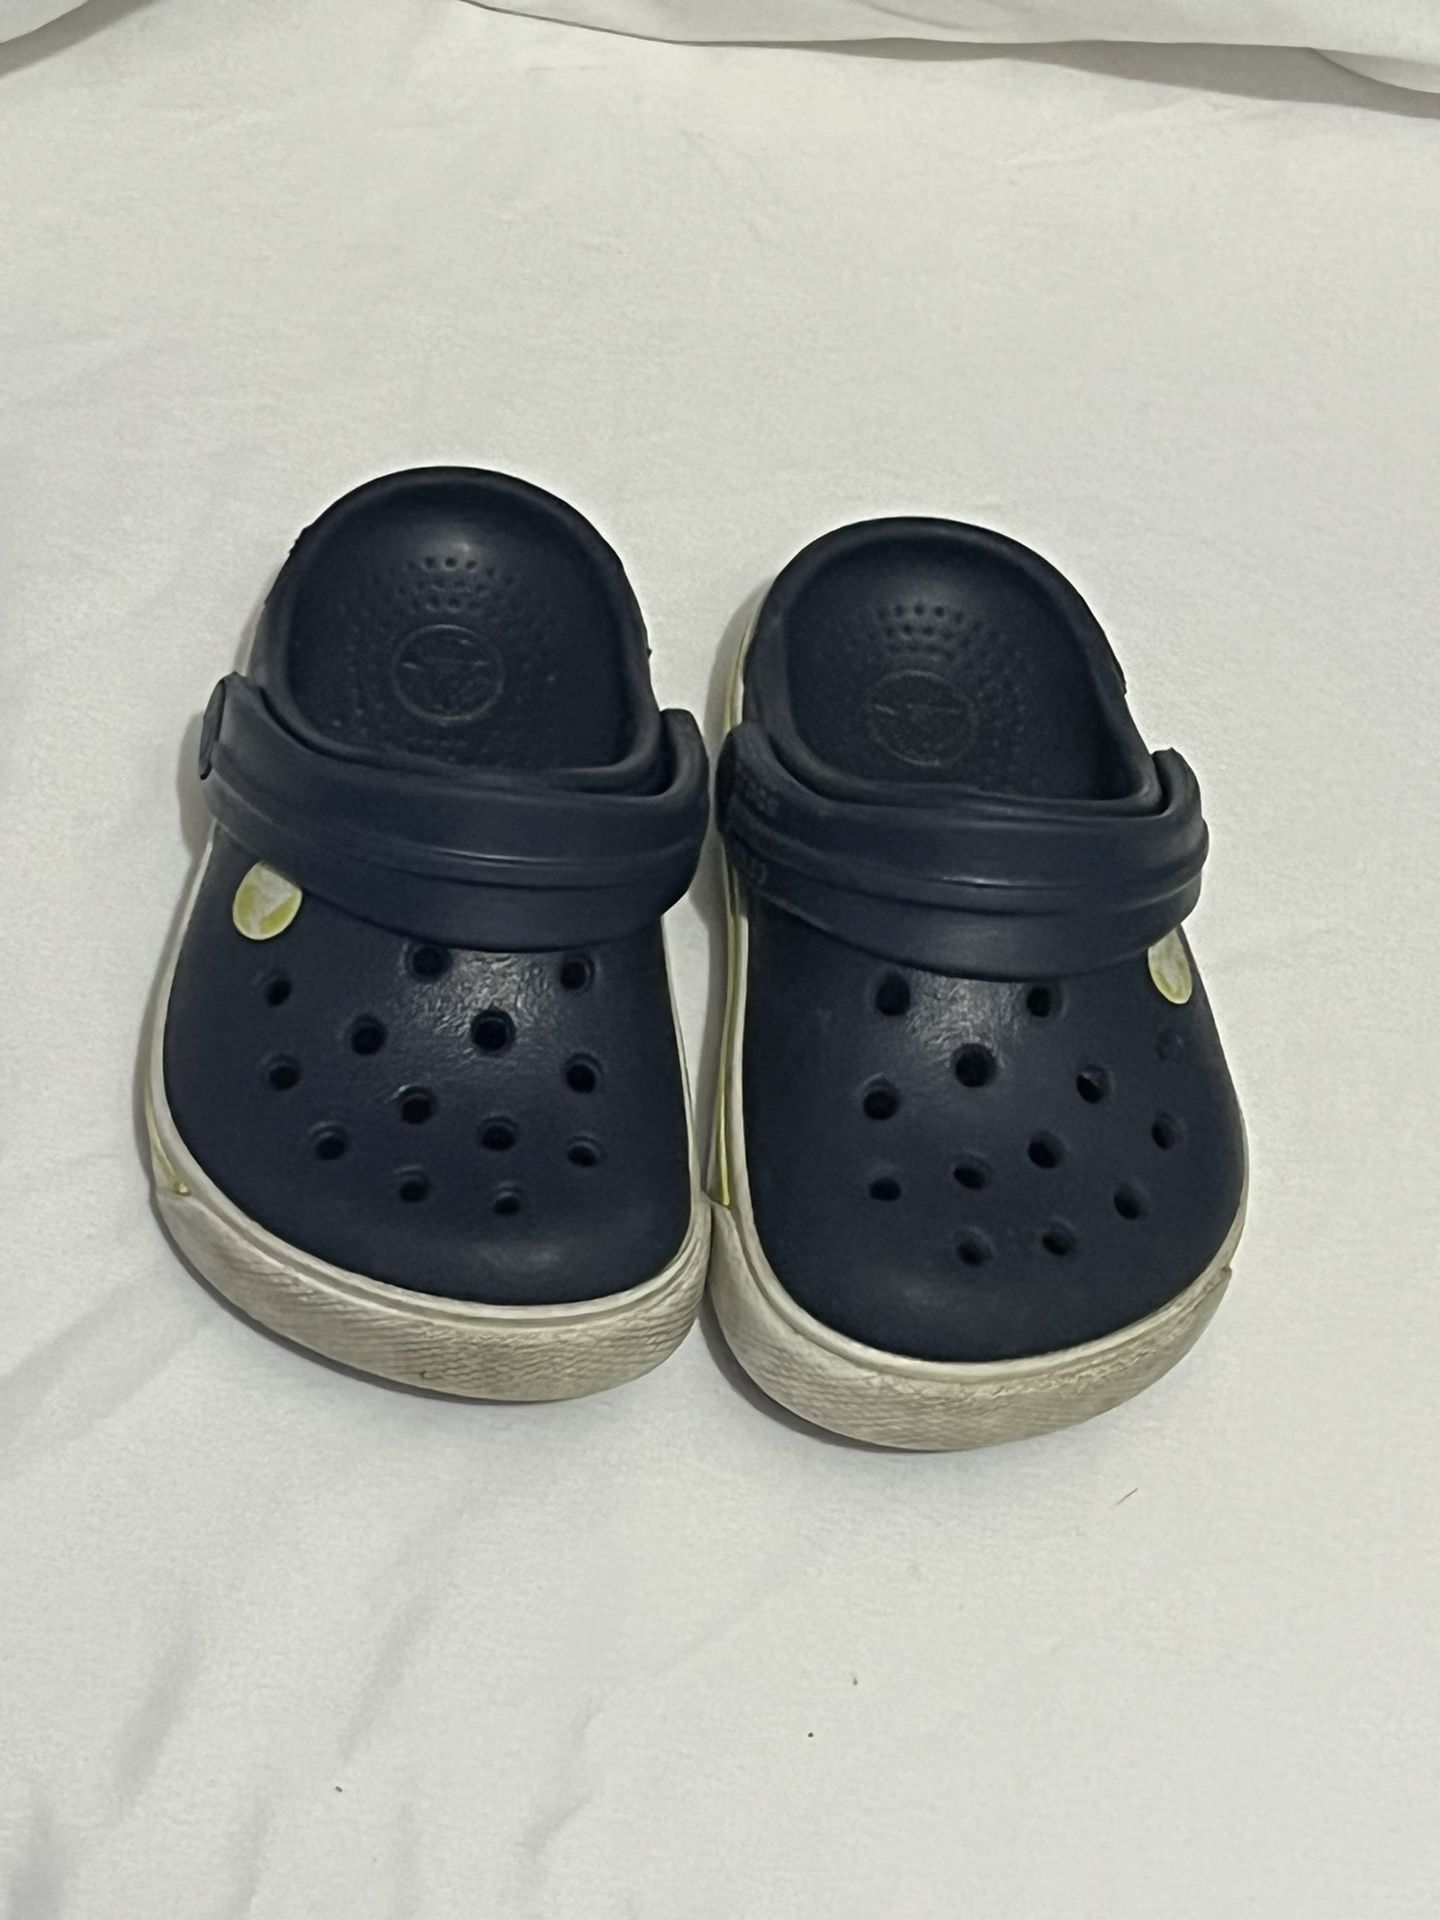 Baby Crocs Size 4 